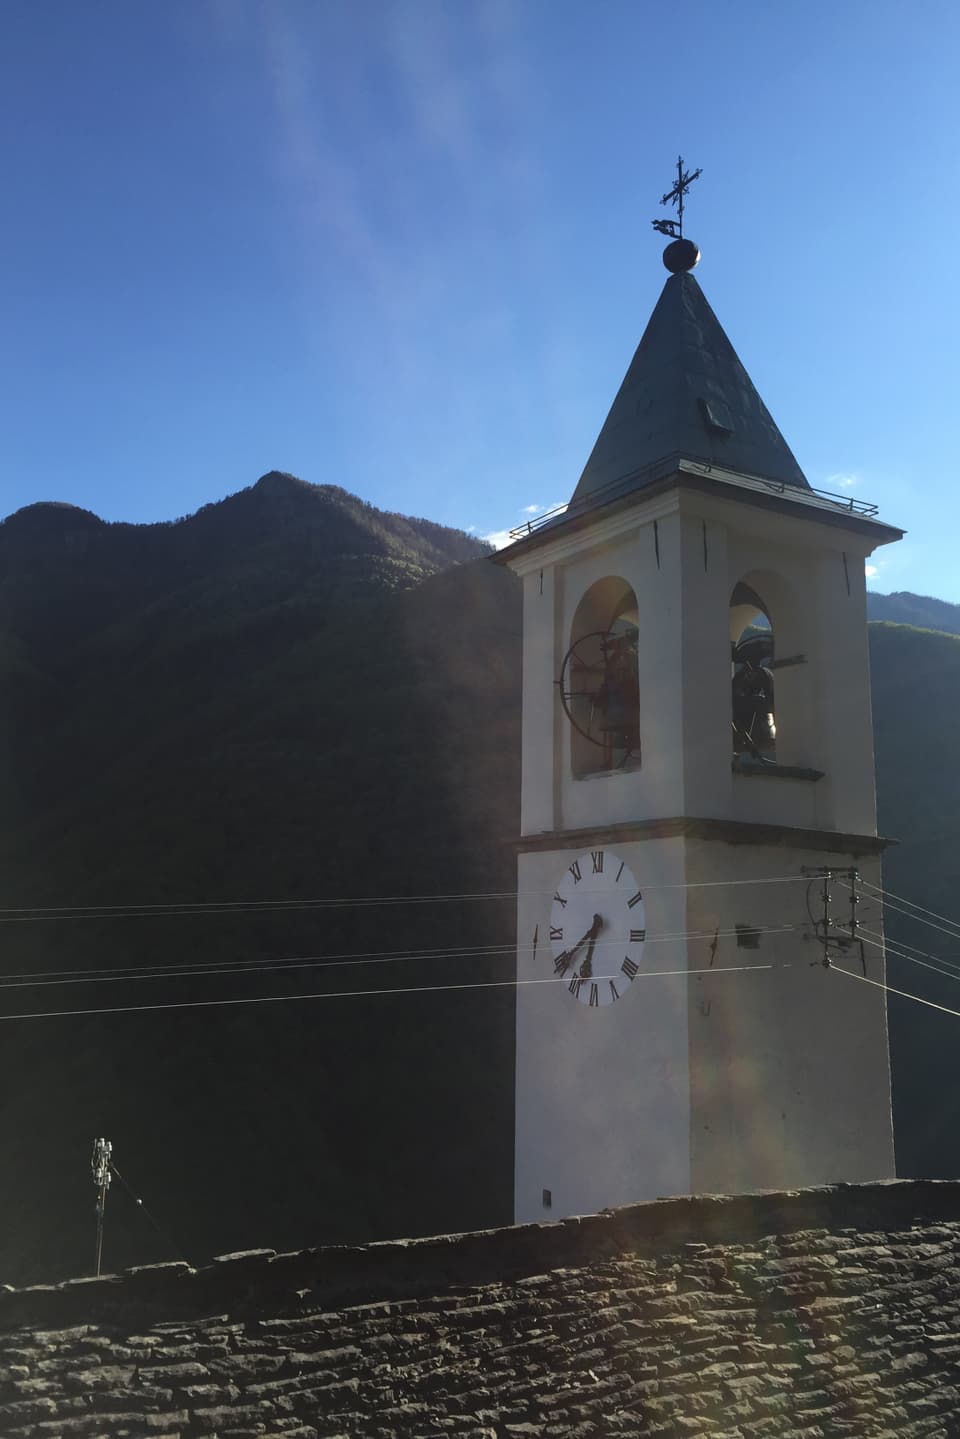 Alter Tessiner Kirchturm, die Uhr zeigt 20 vor sieben. Morgensonne. Im Hintergrund bewaldete Berge, im Vordergrund ein Steindach. 